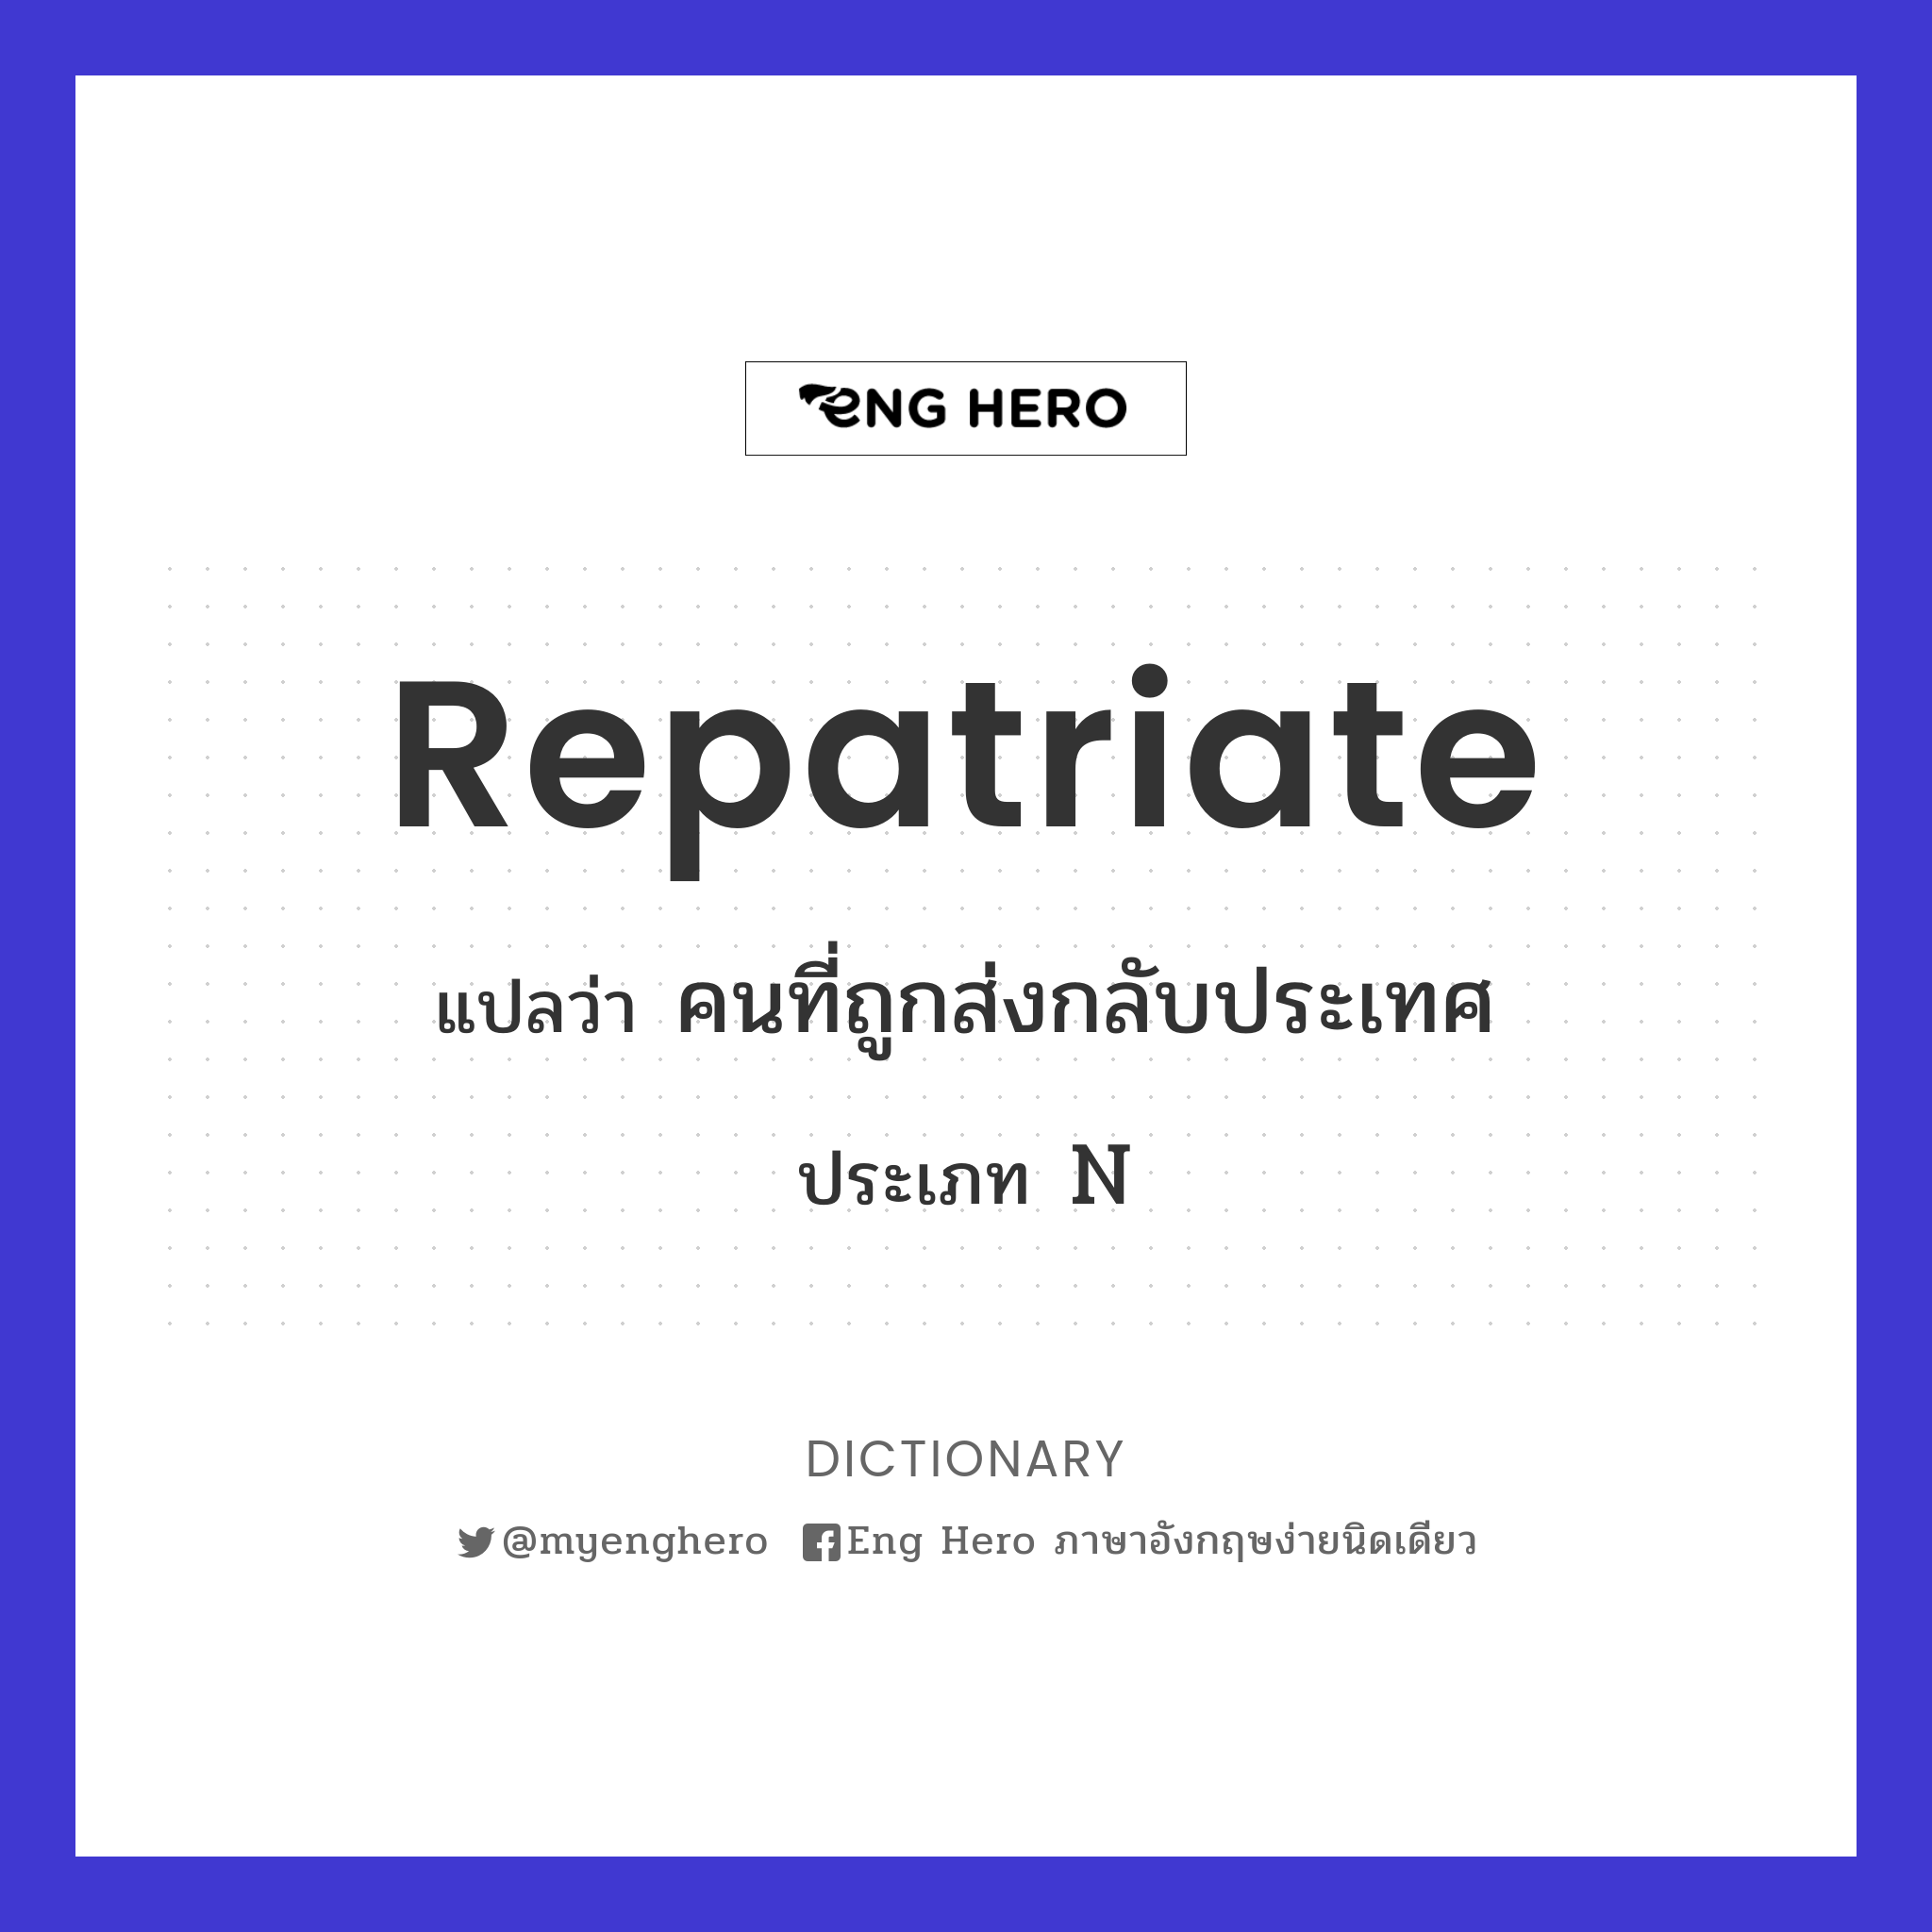 repatriate